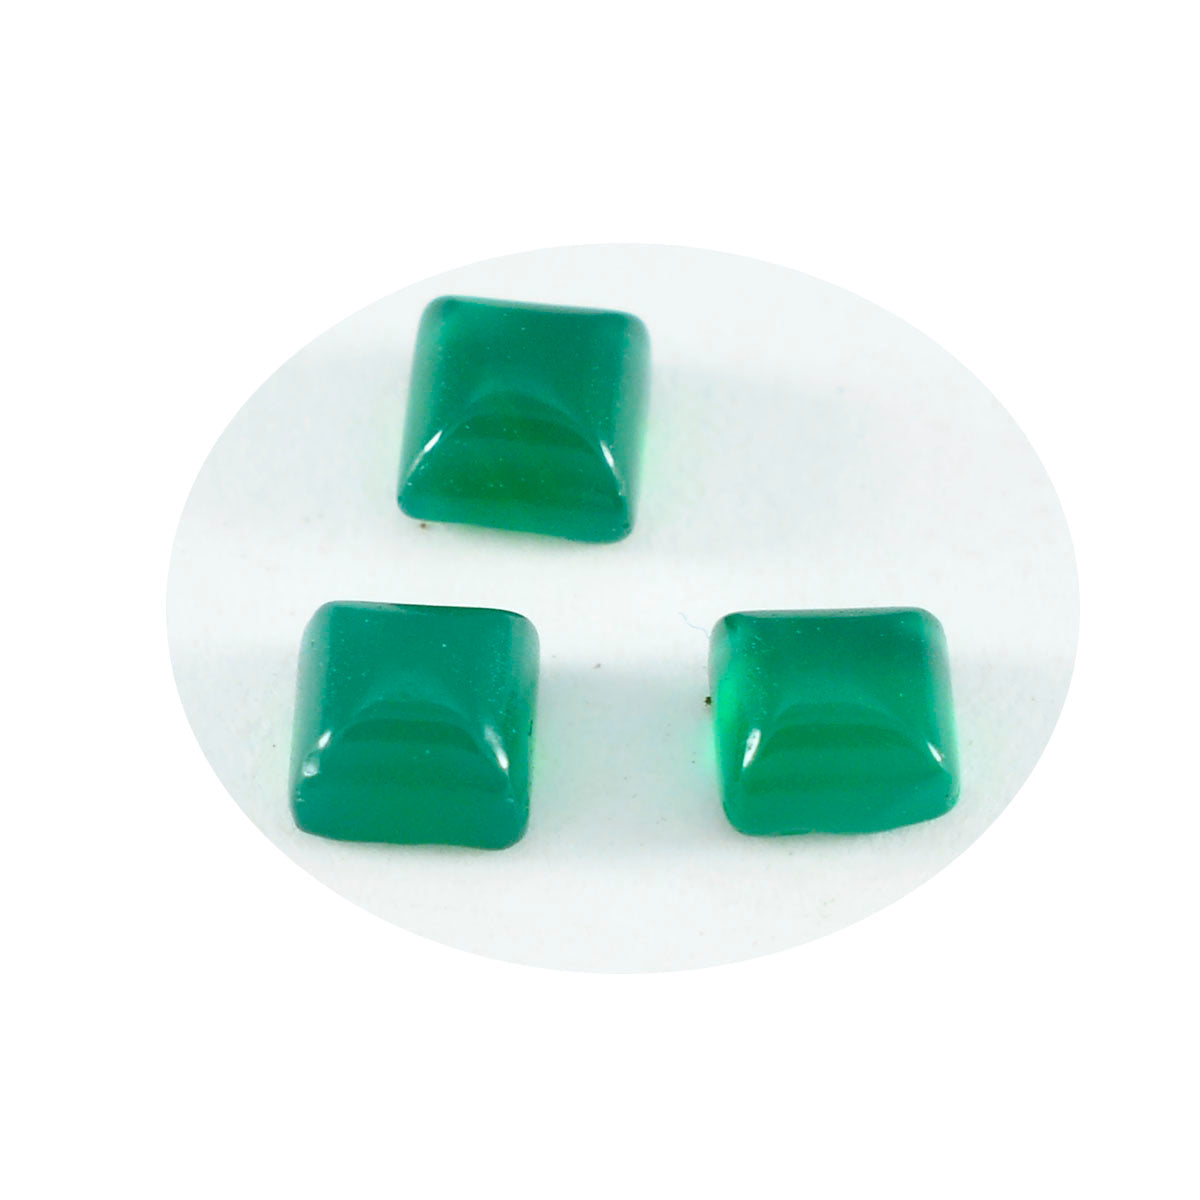 Riyogems 1 cabujón de ónix verde de 0.315 x 0.315 in, forma cuadrada, hermosa calidad, piedra preciosa suelta